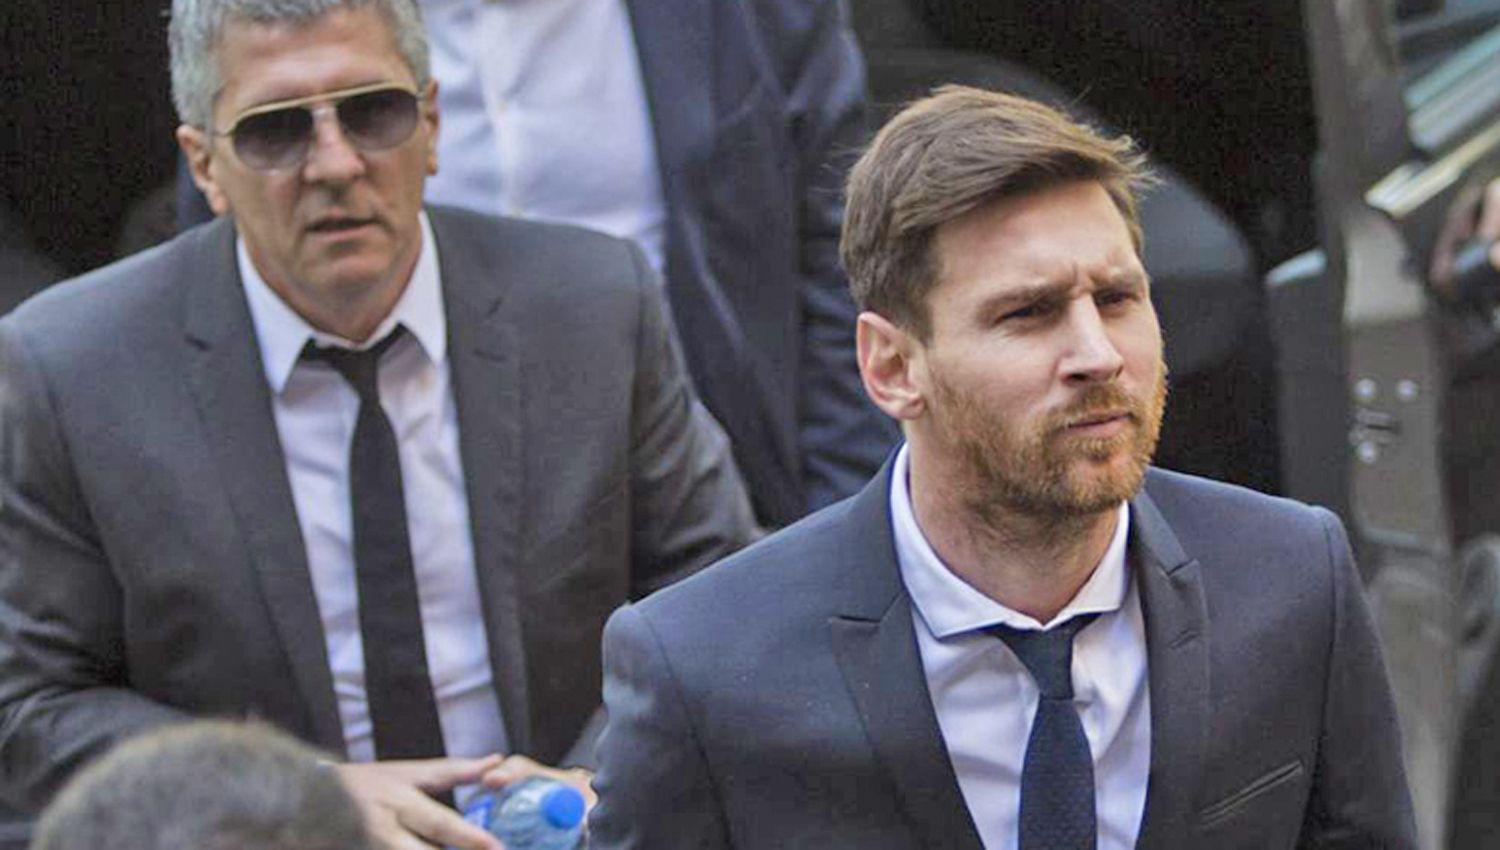 Corriere dello Sport publicó que el padre de Messi ya fijó su residencia en una zona exclusiva de Mil�n